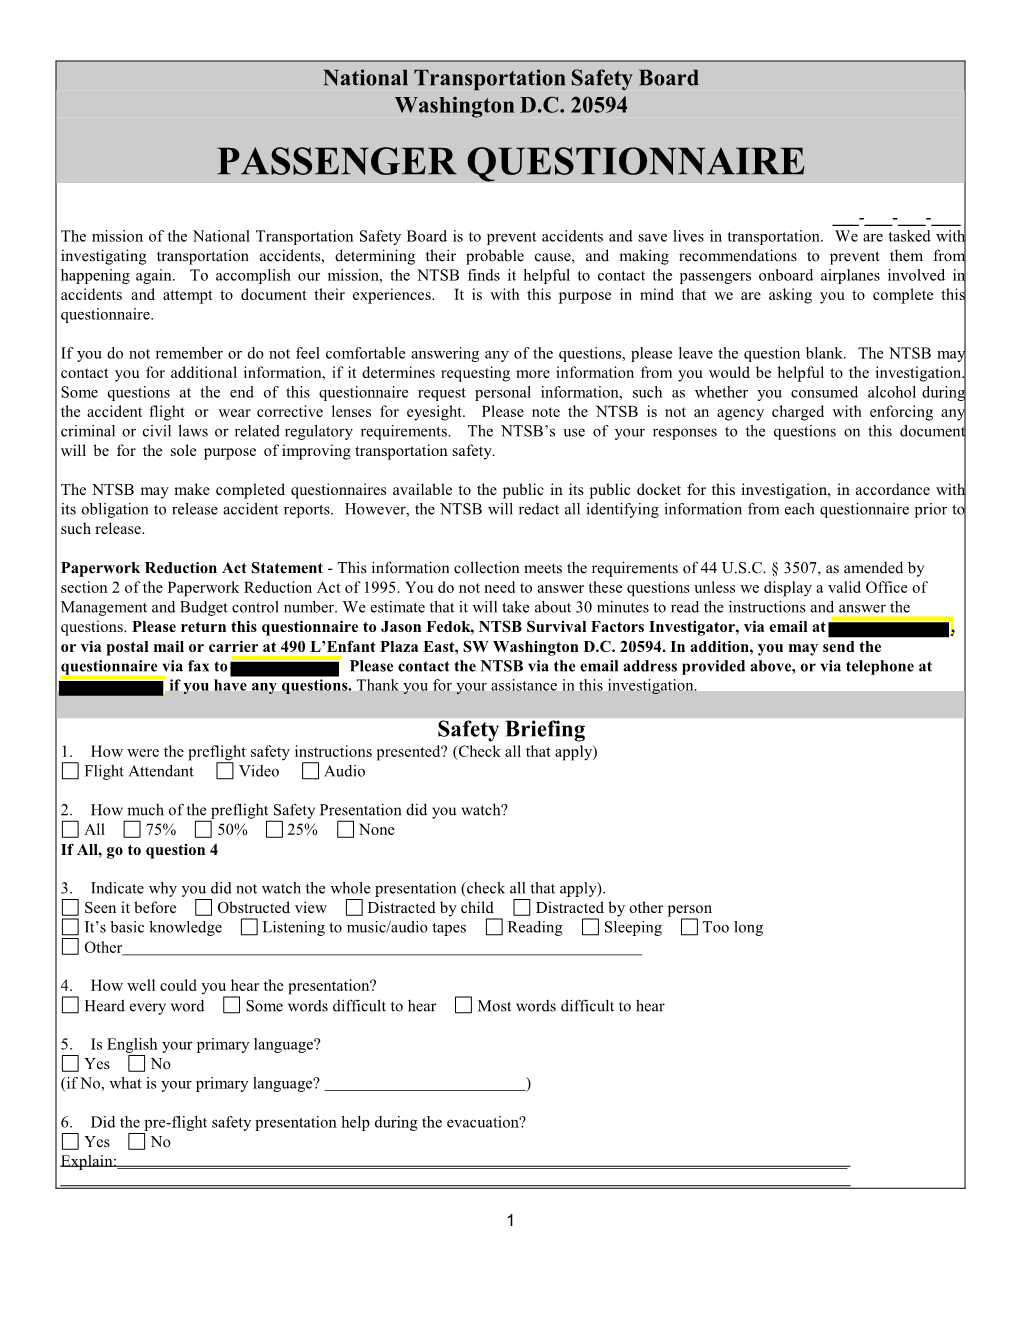 Passenger Questionnaire